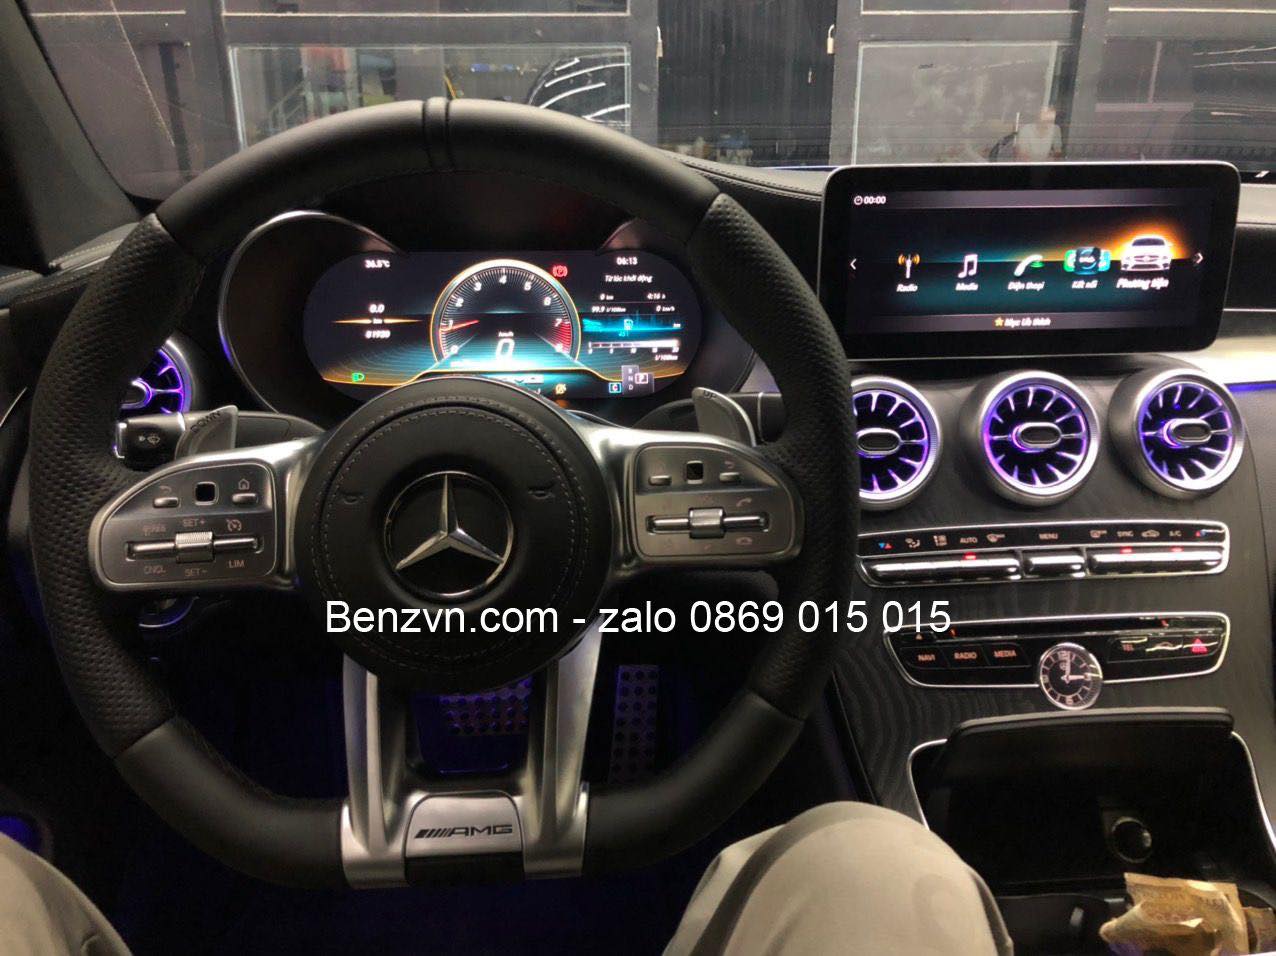 Mercedes benz C300 couper 2017 nâng cấp màn hình , đồng hồ tốc độ LCD